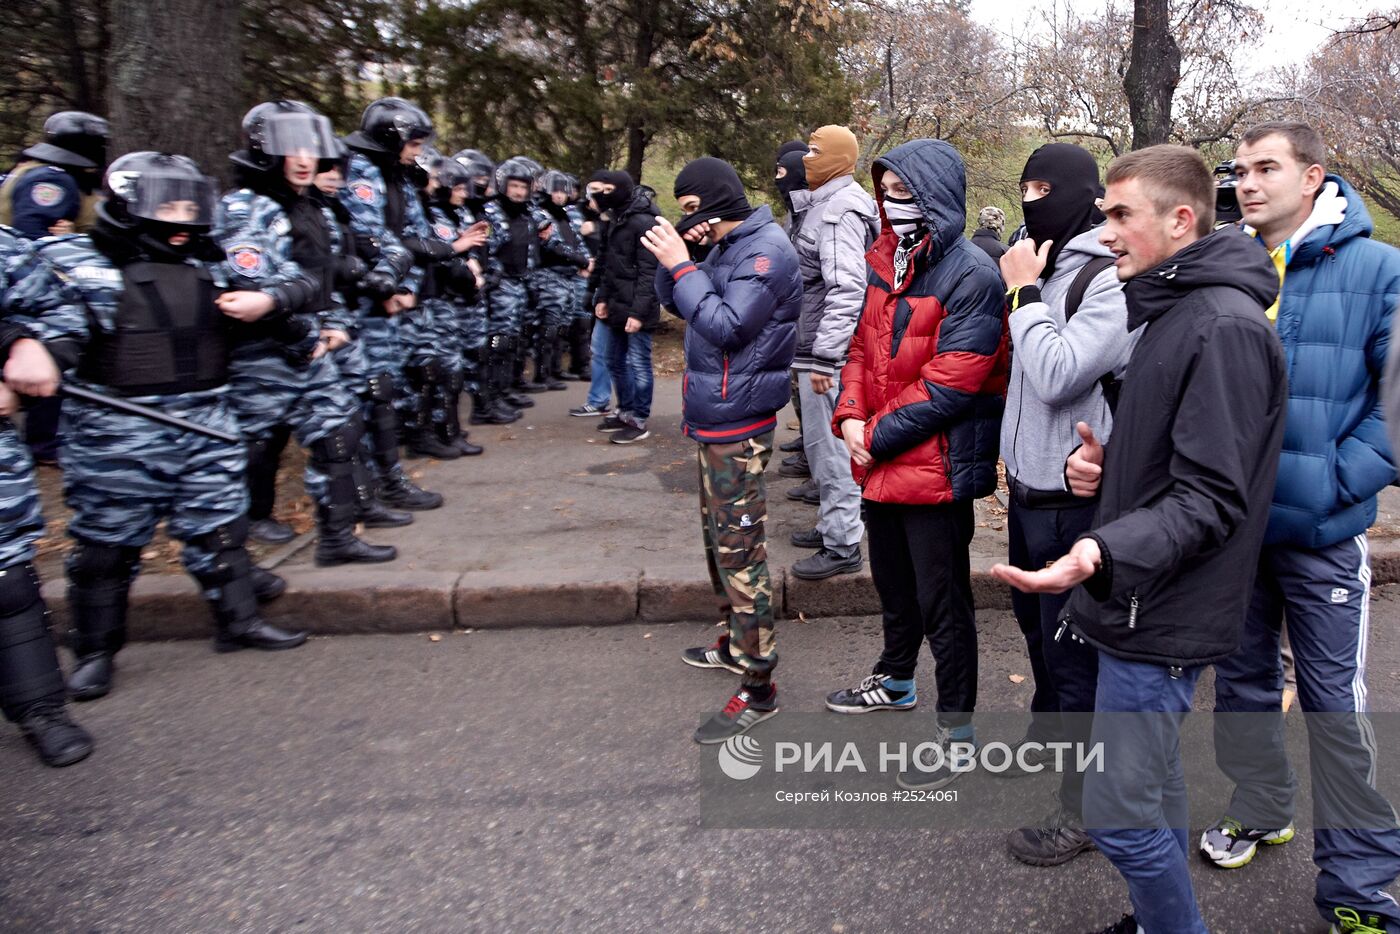 Столкновение радикалов "Правого сектора" и сторонников Компартии Украины в Харькове